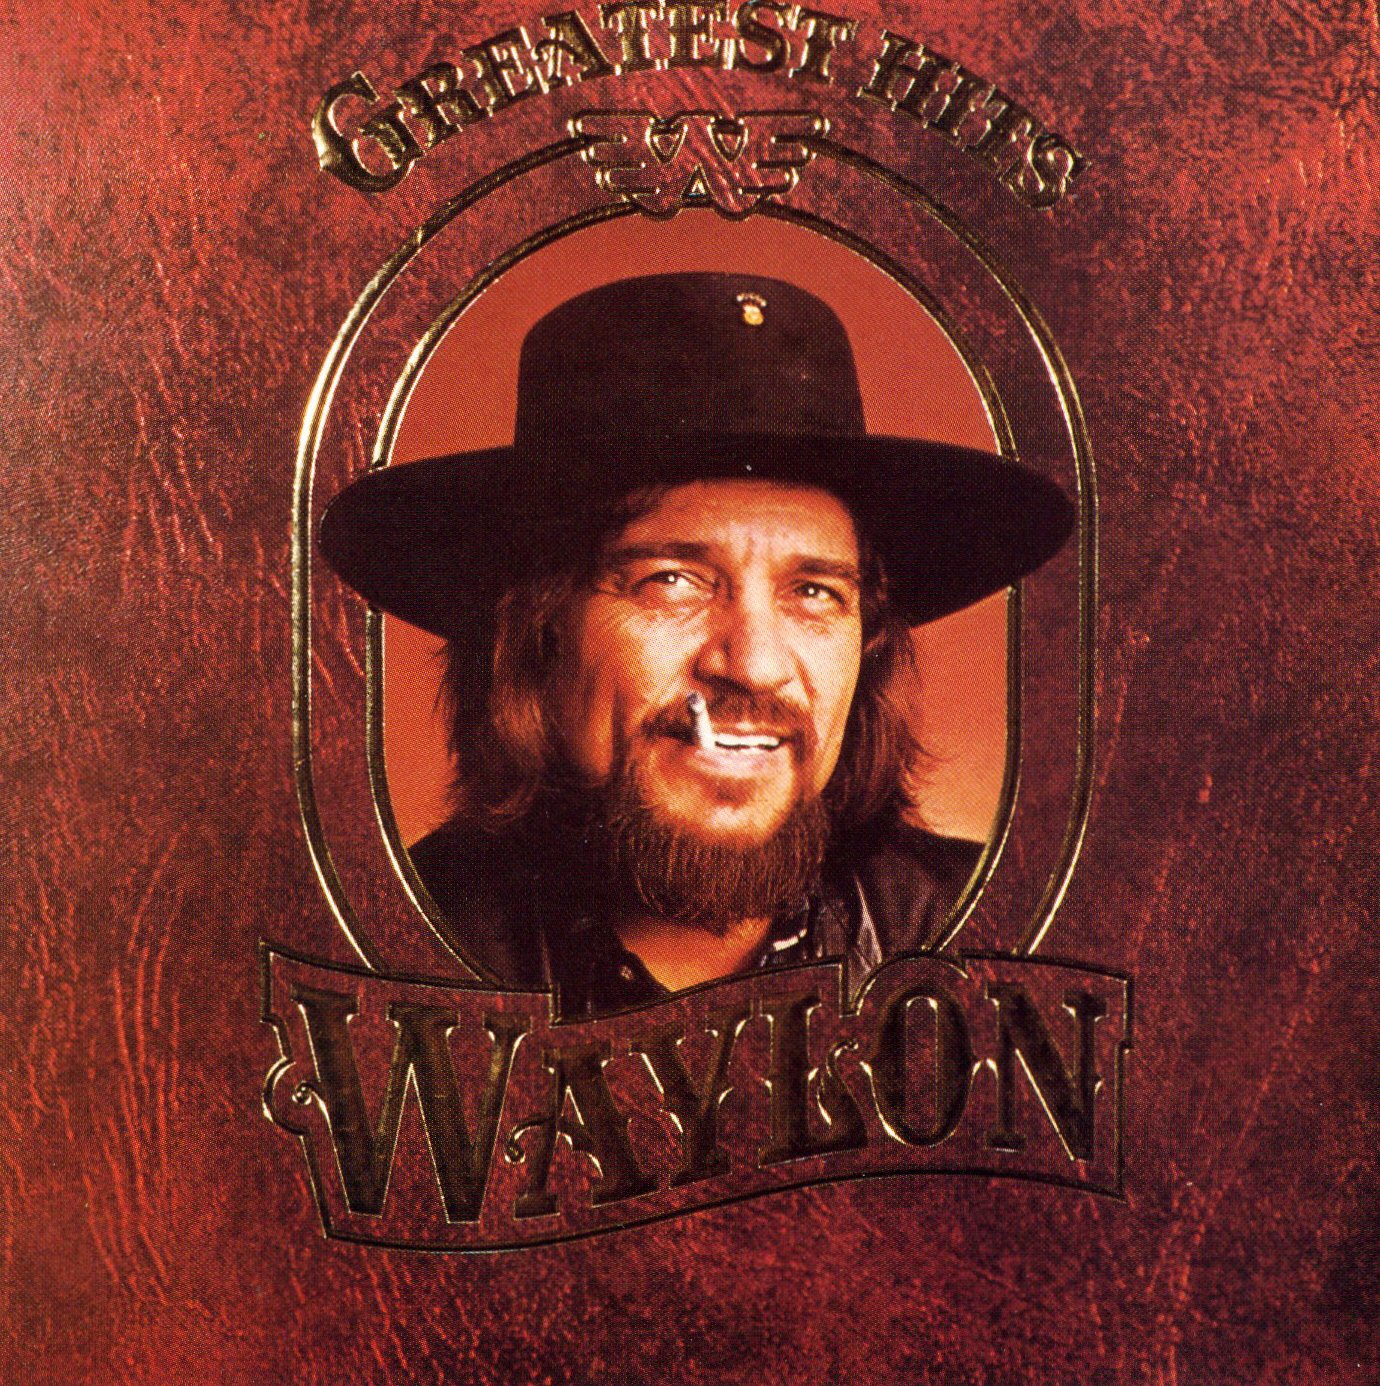 Waylon Jennings - Greatest Hits - Rca